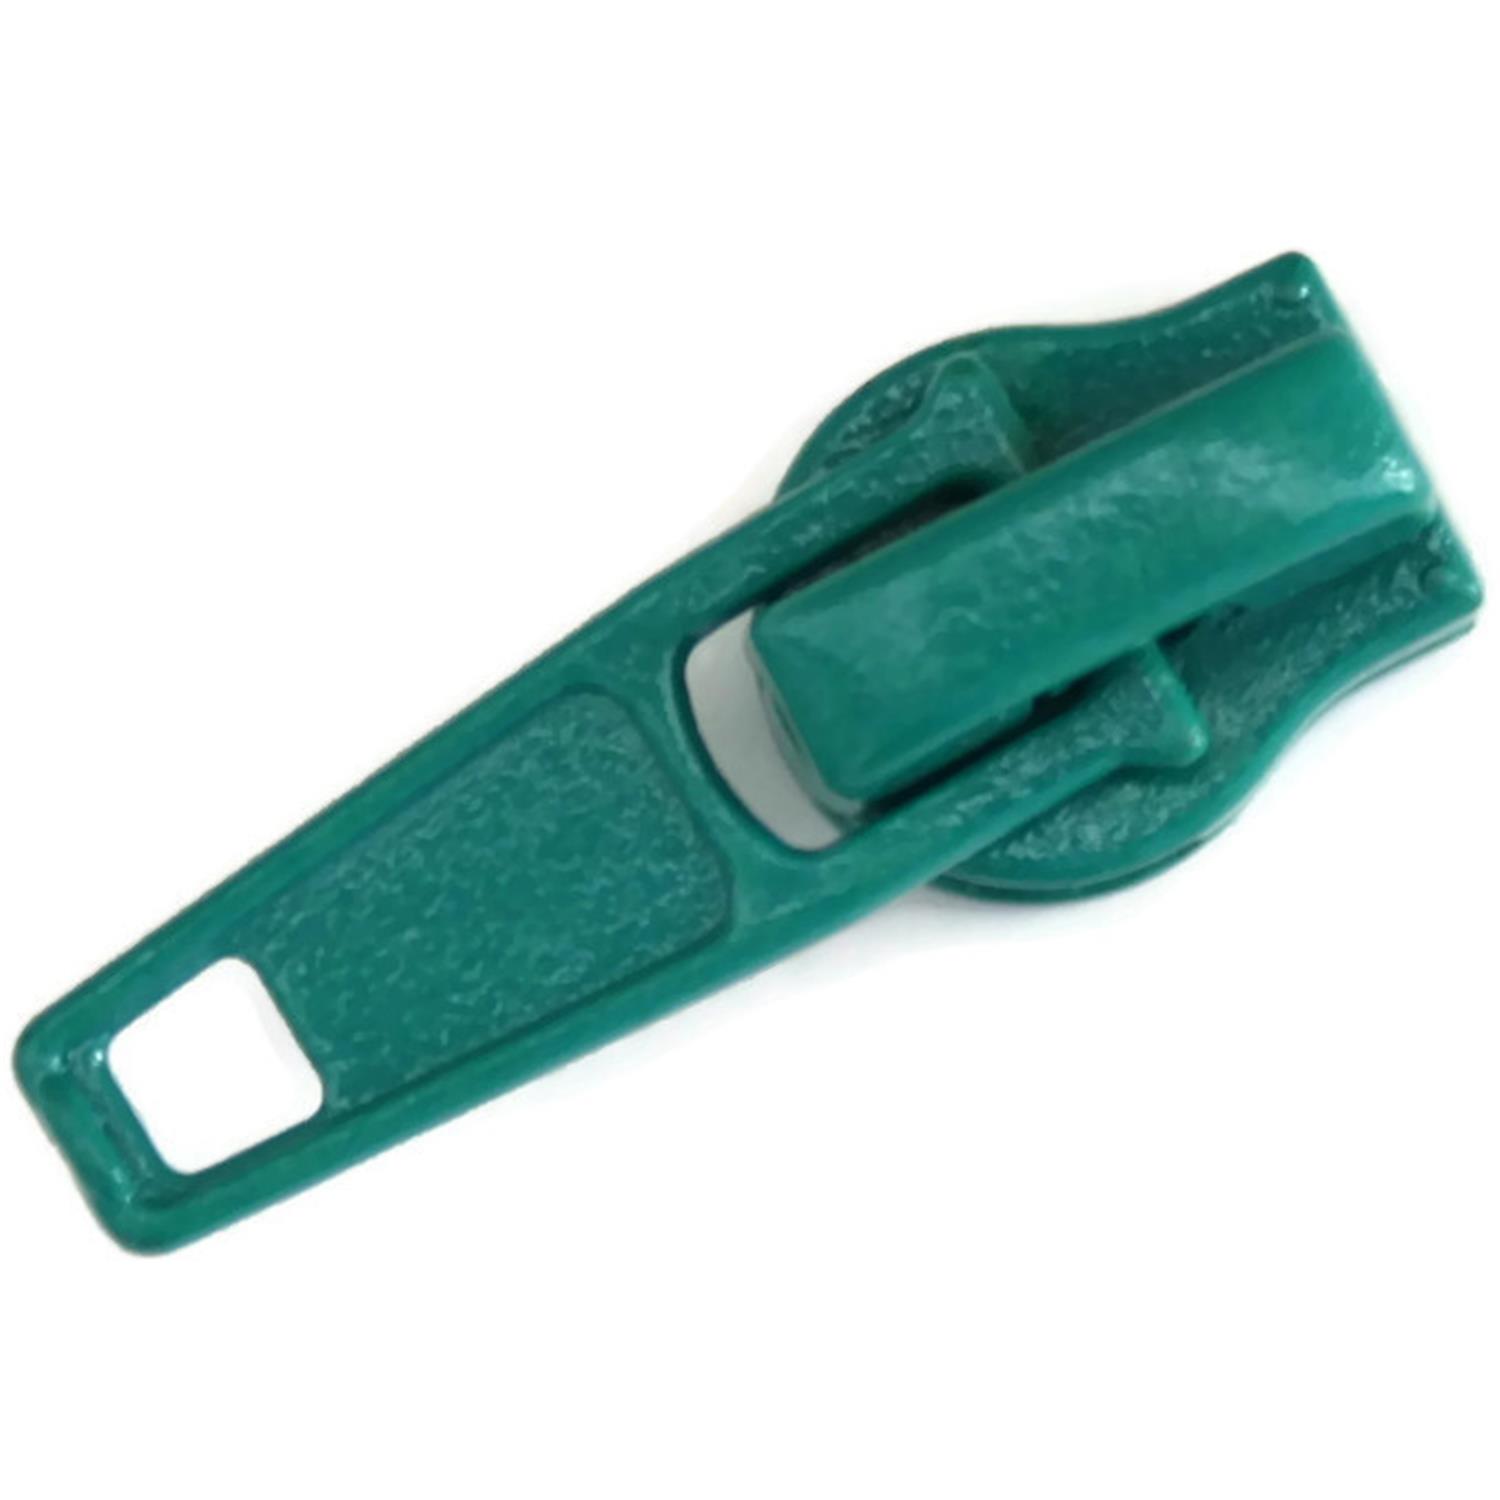 Autolock Schieber für Endlosreißverschluss 5mm, 42 Farben 79 - smaragdgrün